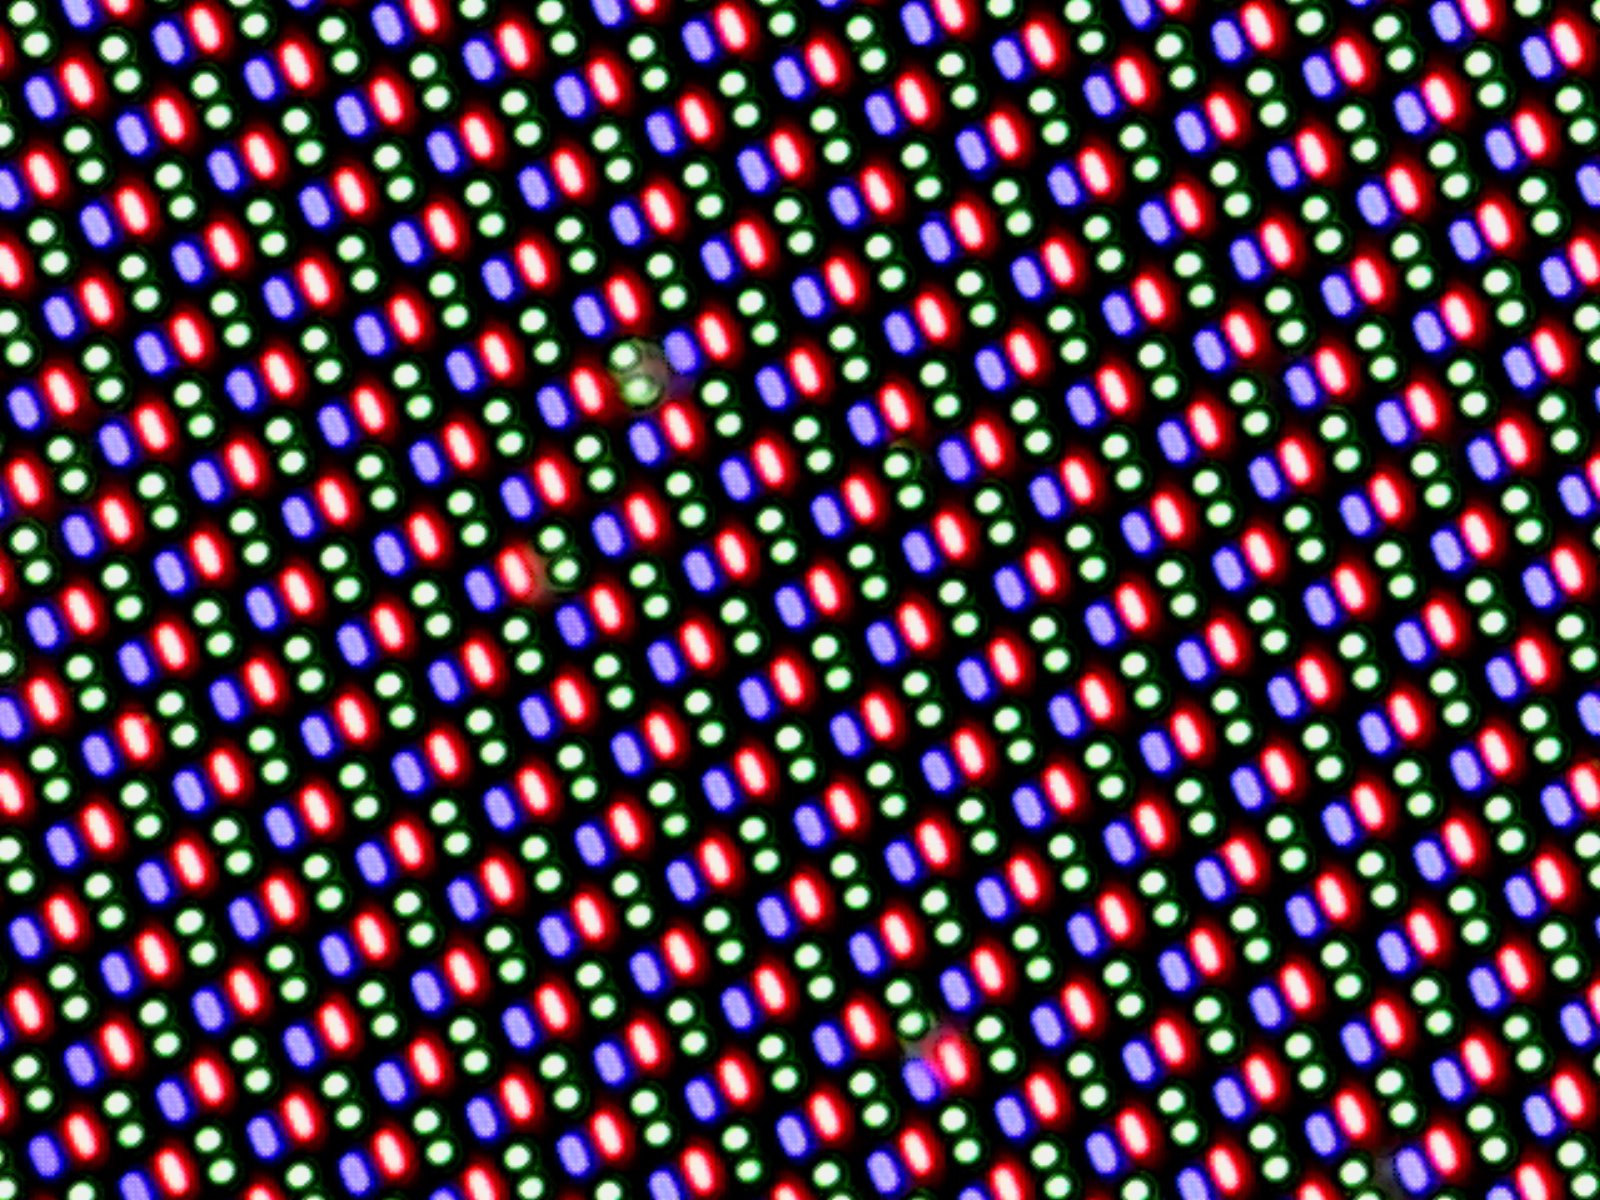 Название пикселей. Структура пикселя. Амолед матрица пиксельная сетка. Структура пикселей va. Монтажная сетка пиксели.